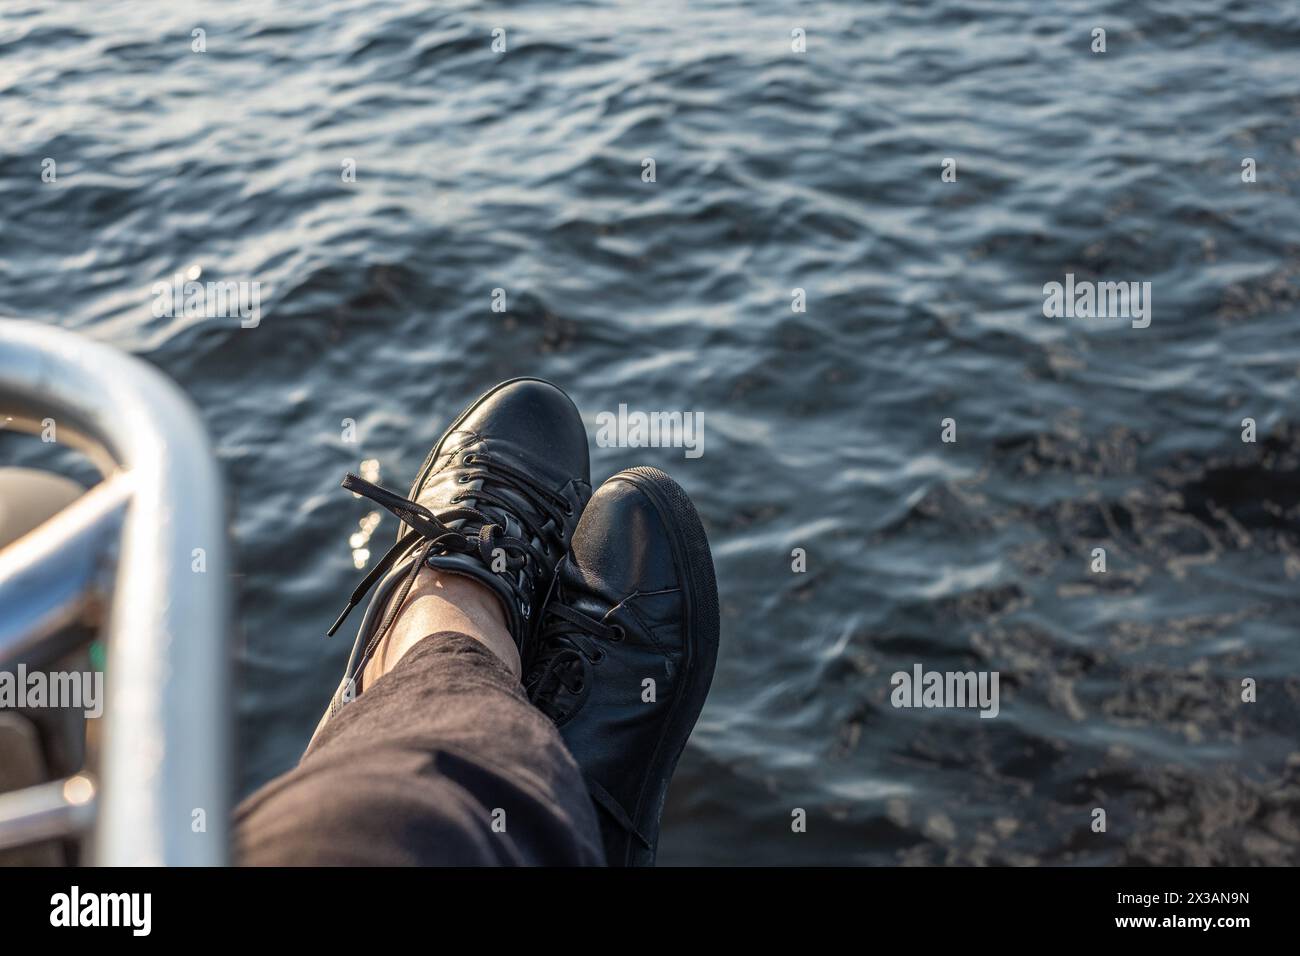 Piedi in sneakers nere appoggiati sul bordo di una barca, con il mare blu profondo sullo sfondo, che ritrae un momento marittimo rilassato. Foto di alta qualità Foto Stock